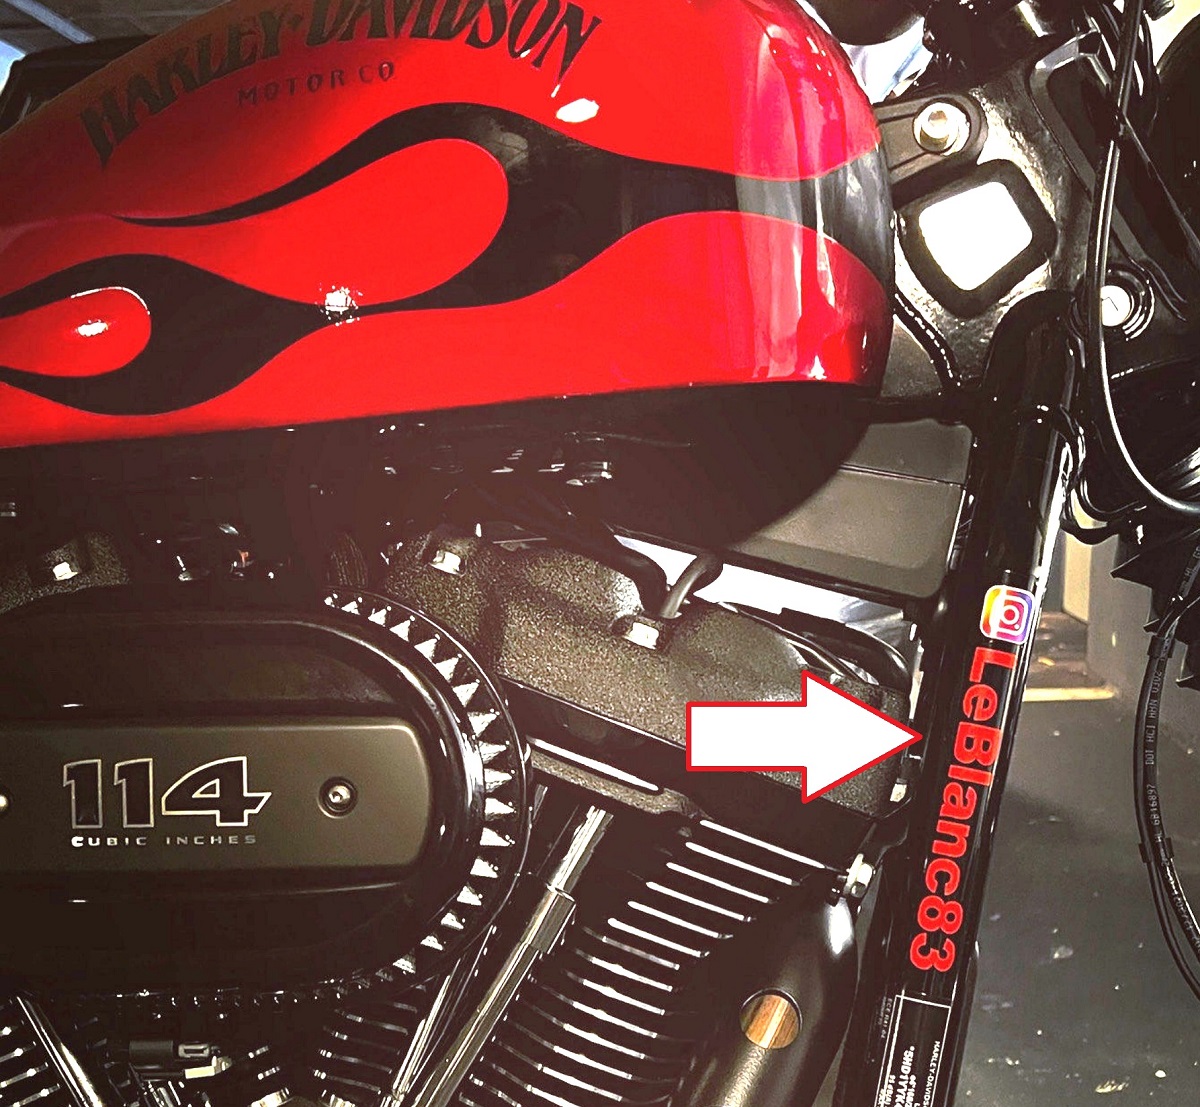 Instagram Aufkleber Auto & Motorrad Sticker mit Namen selbst